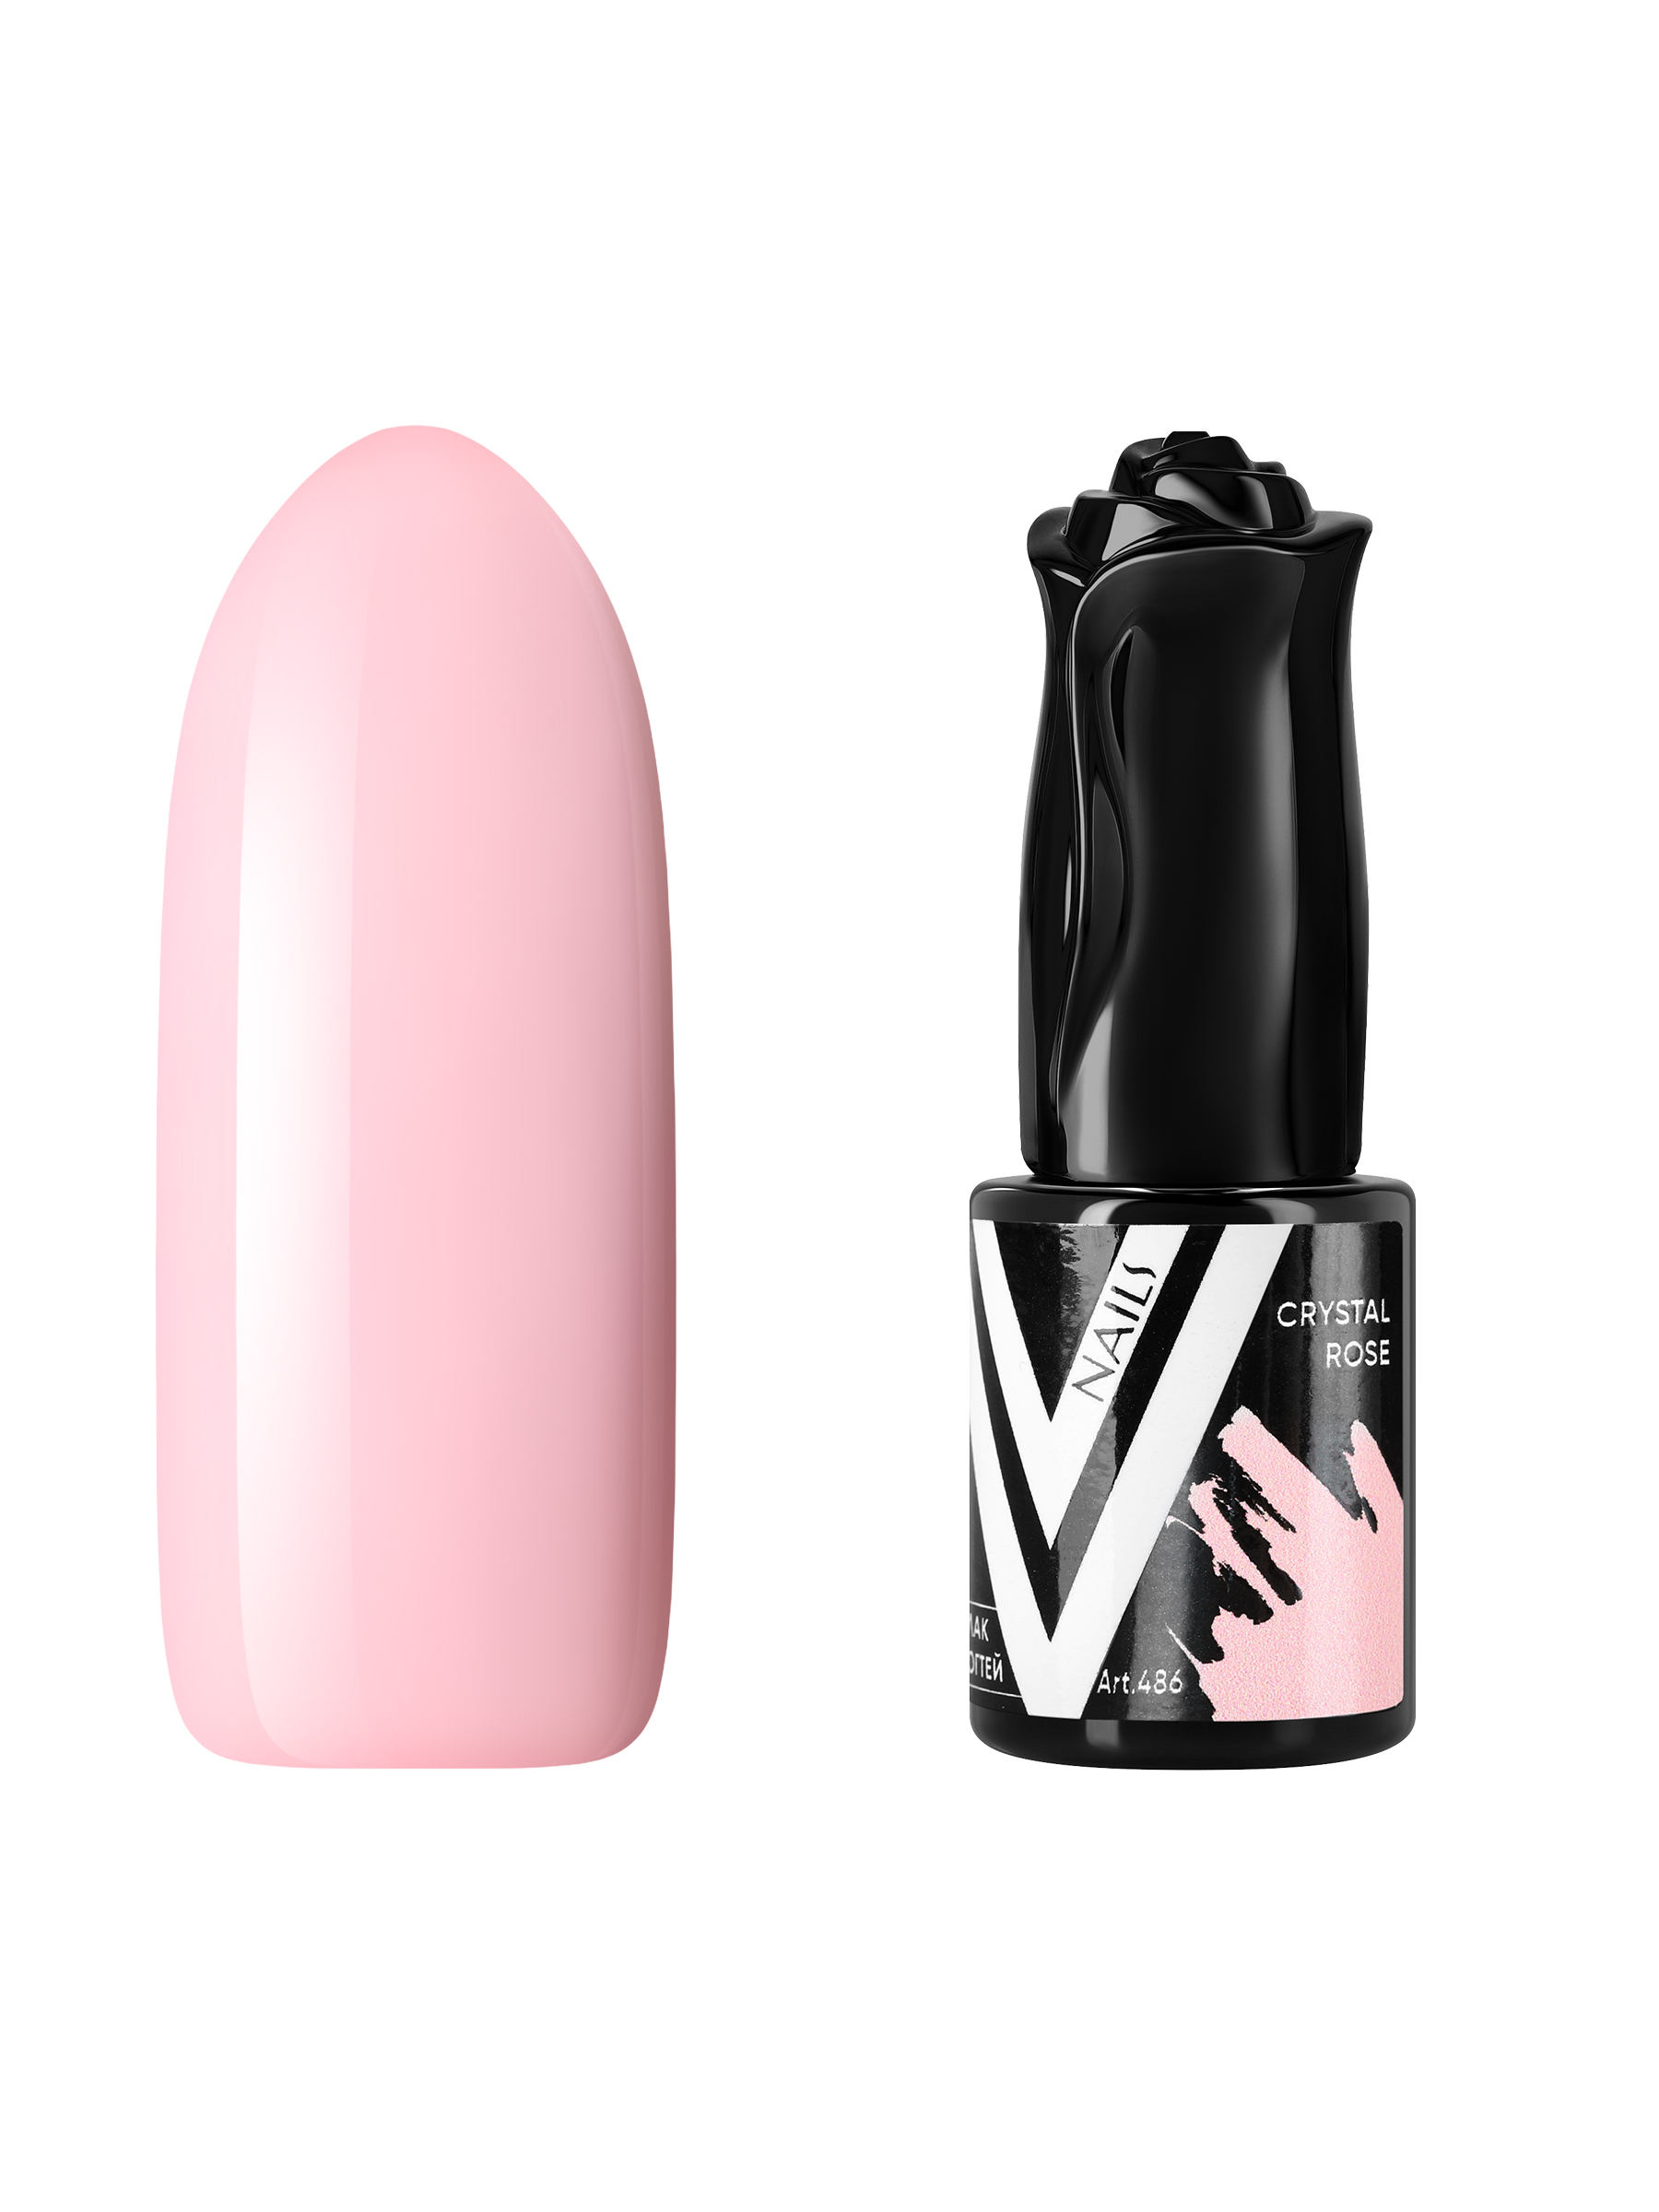 Гель-лак для ногтей Vogue Nails пыльный пастельный плотный приглушенный, розовый, 10 мл гель лак planet nails vortexx 651 8 мл